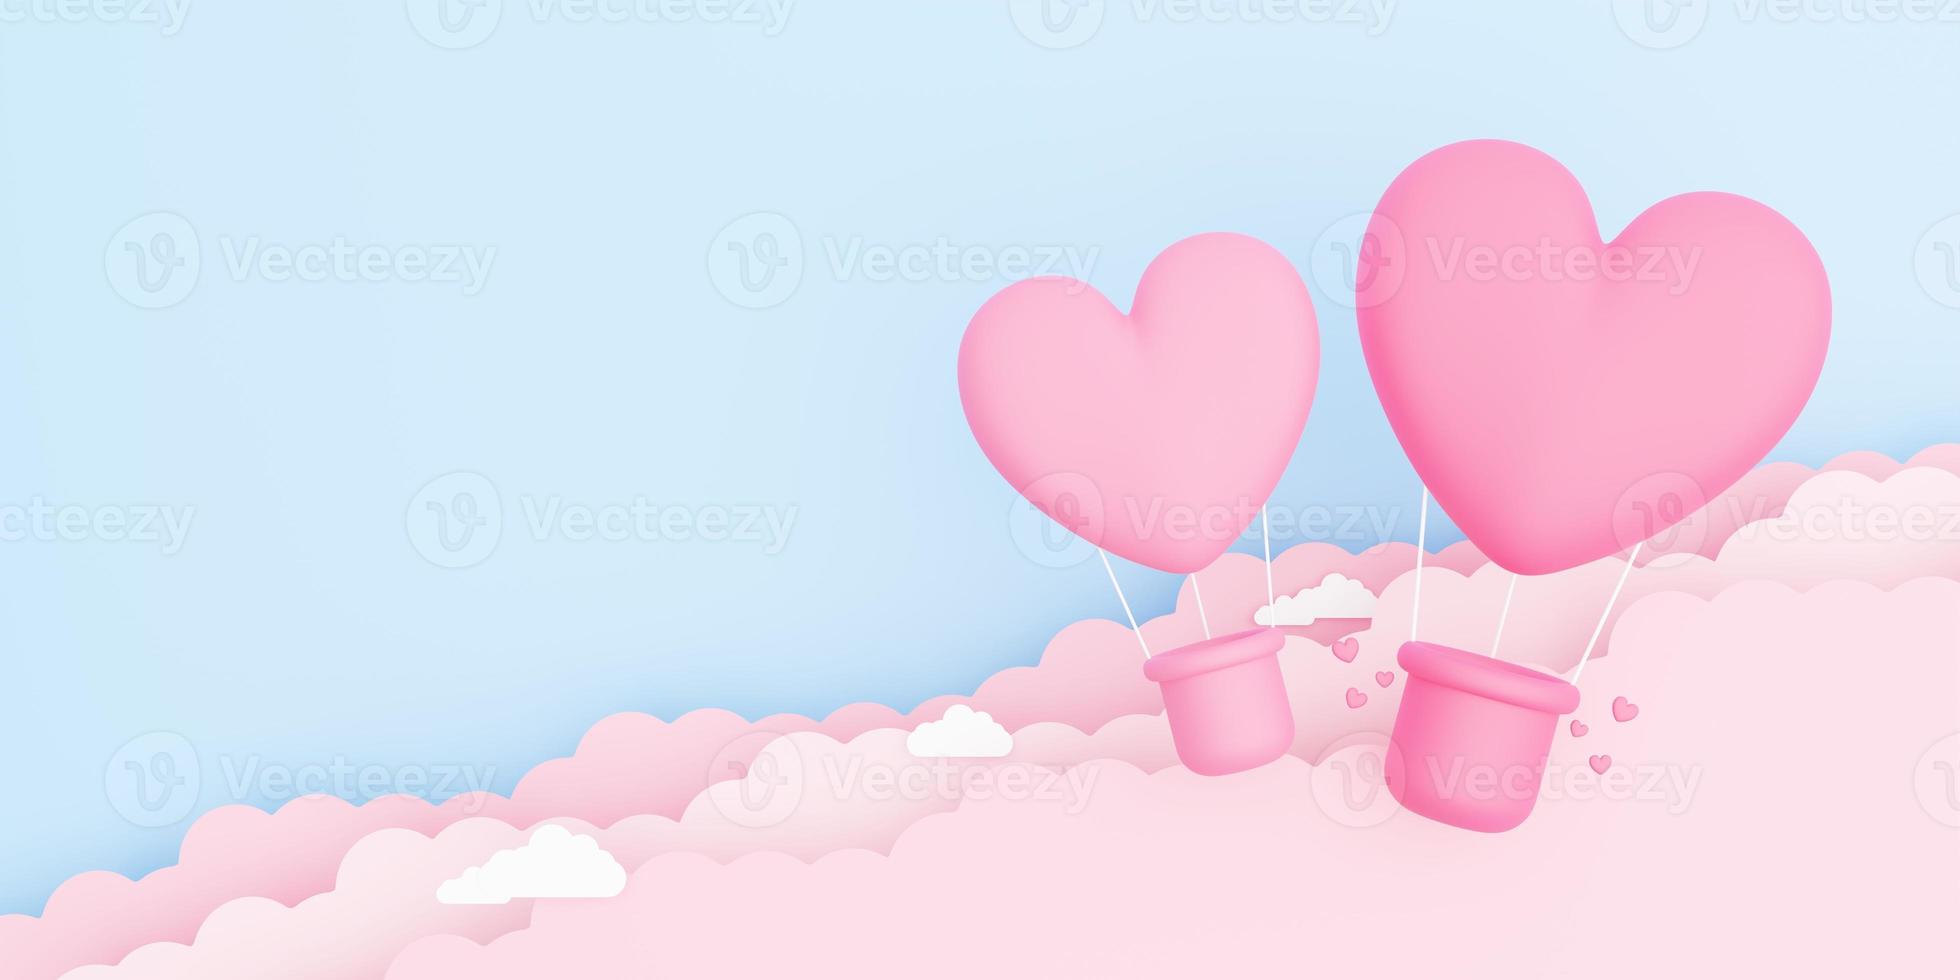 il giorno di san valentino, illustrazione 3d di mongolfiere rosa a forma di cuore che galleggiano nel cielo con nuvole di carta foto